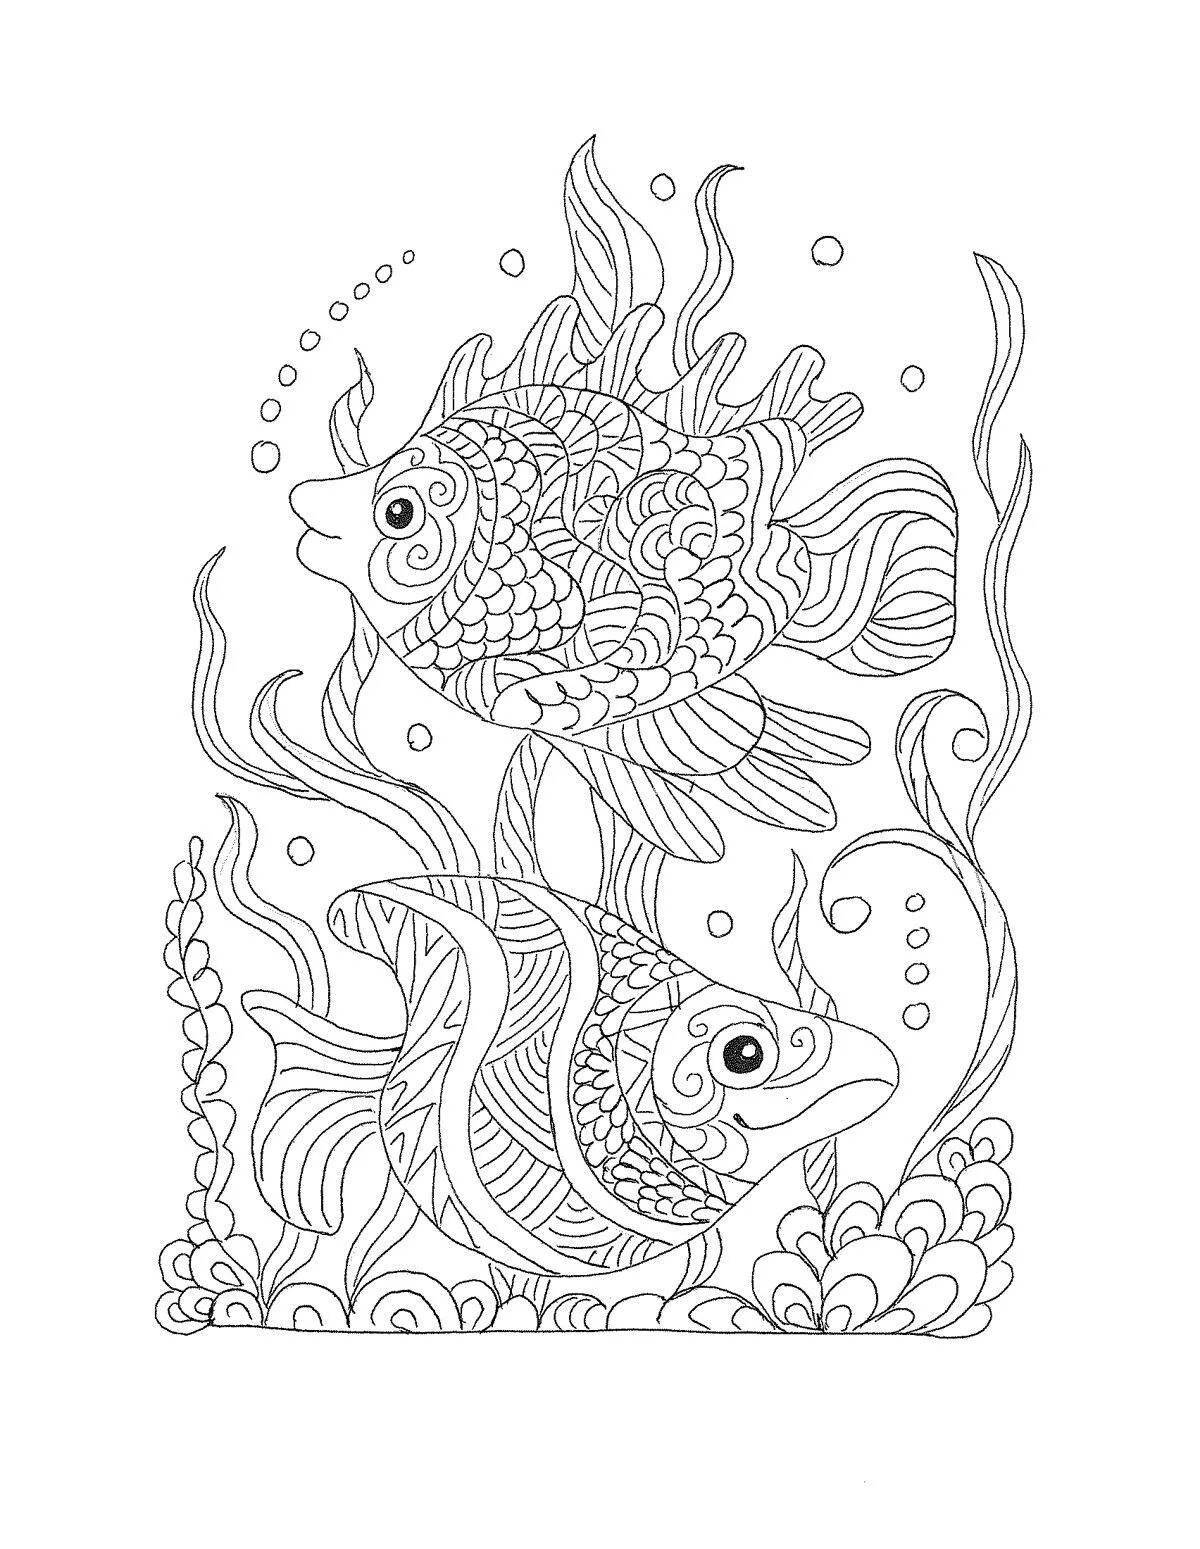 Exquisite marine life anti-stress coloring book